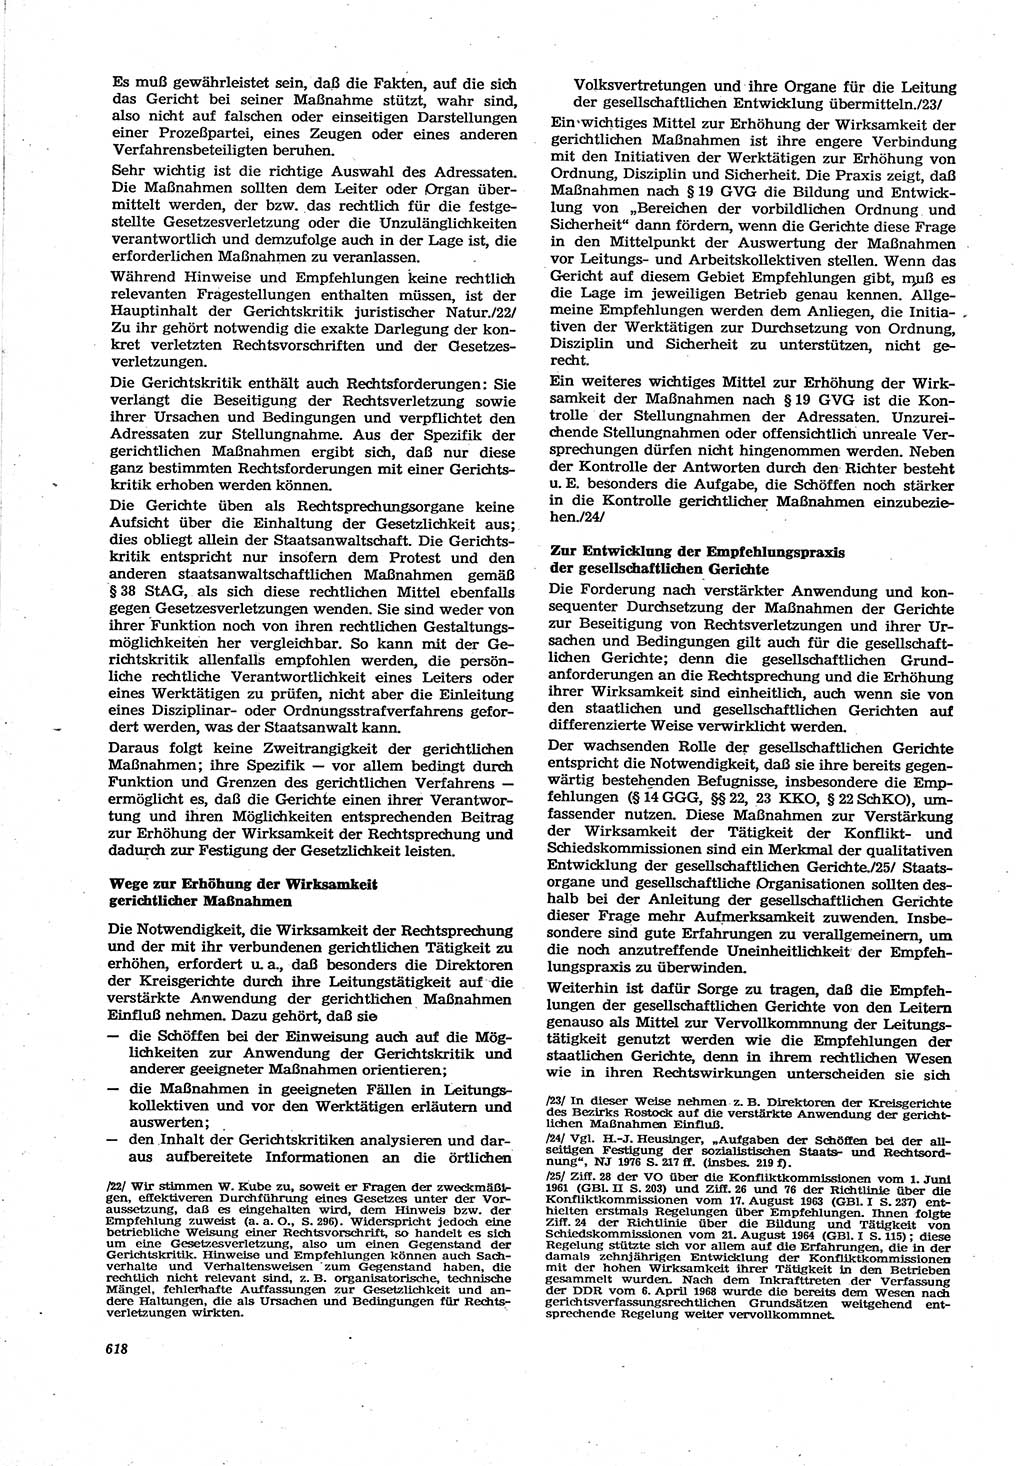 Neue Justiz (NJ), Zeitschrift für Recht und Rechtswissenschaft [Deutsche Demokratische Republik (DDR)], 30. Jahrgang 1976, Seite 618 (NJ DDR 1976, S. 618)